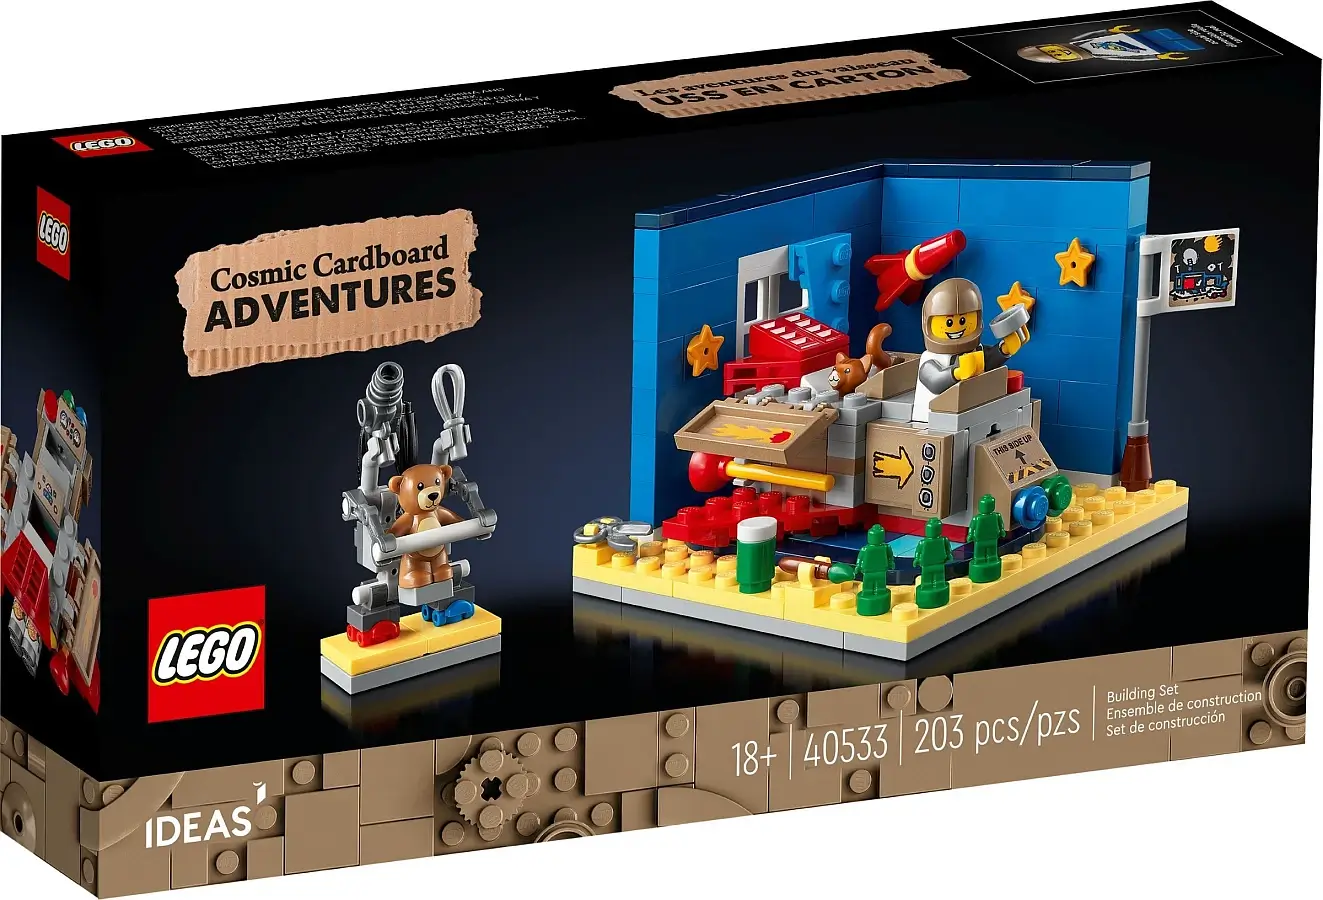 Zdjęcie pudełka zestawu 40533 z serii LEGO® ideas